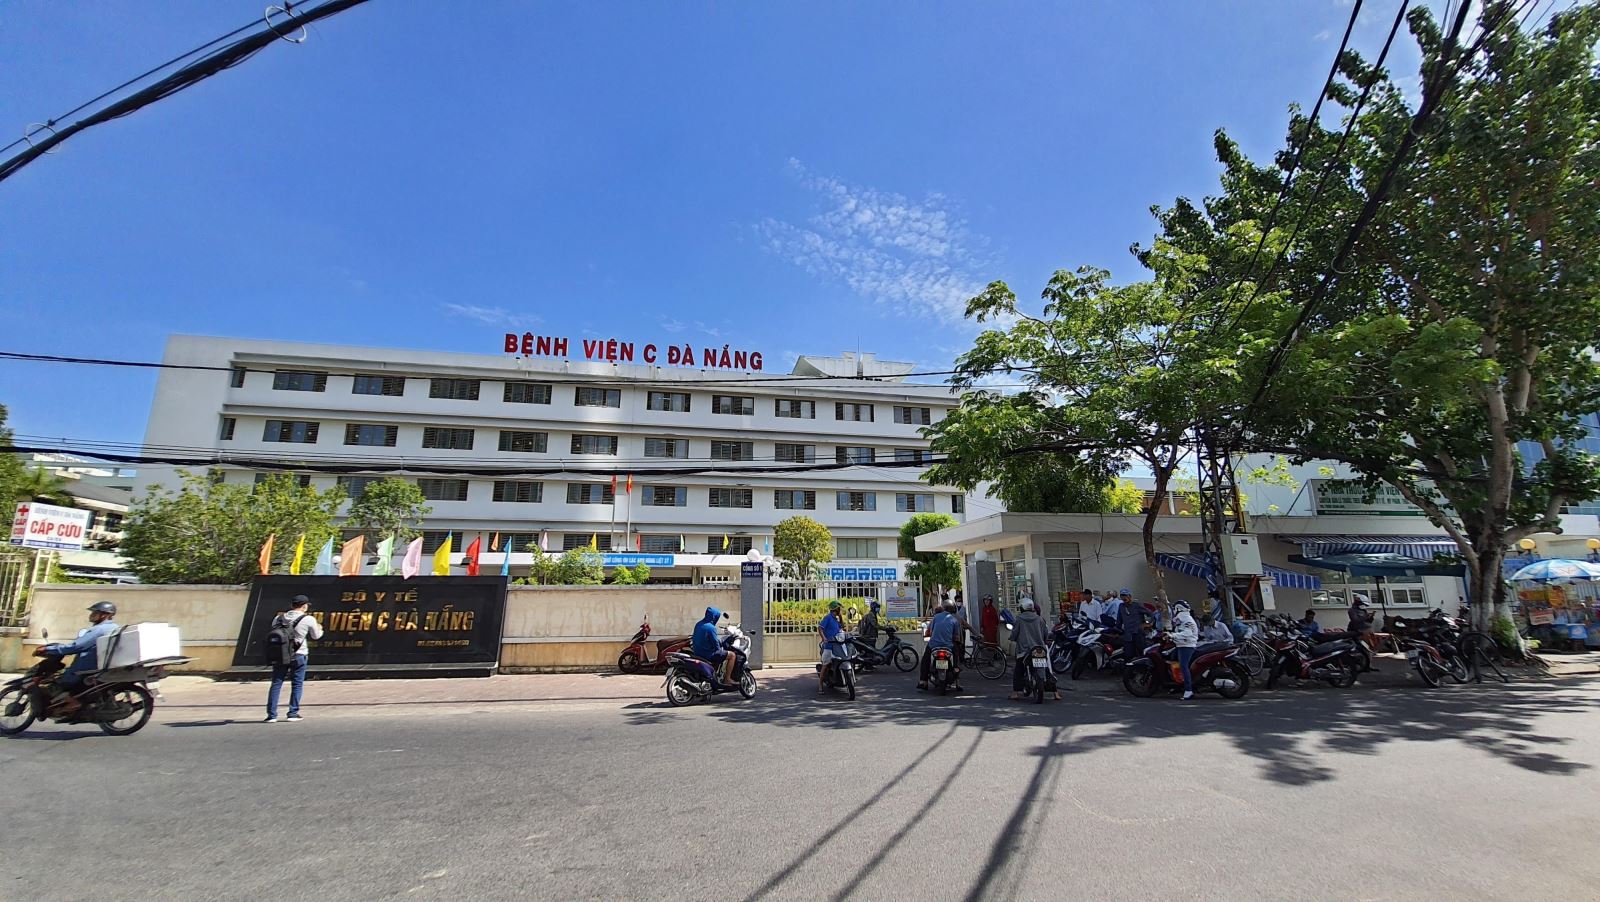 Ca bệnh nghi mắc COVID-19 ở Đà Nẵng, Đà Nẵng phong tỏa bệnh viên, Ca nhiễm, cách ly, Bệnh viện C Đà Nẵng, bệnh nhân T.V.D, thông tin khẩn của Bộ y tế